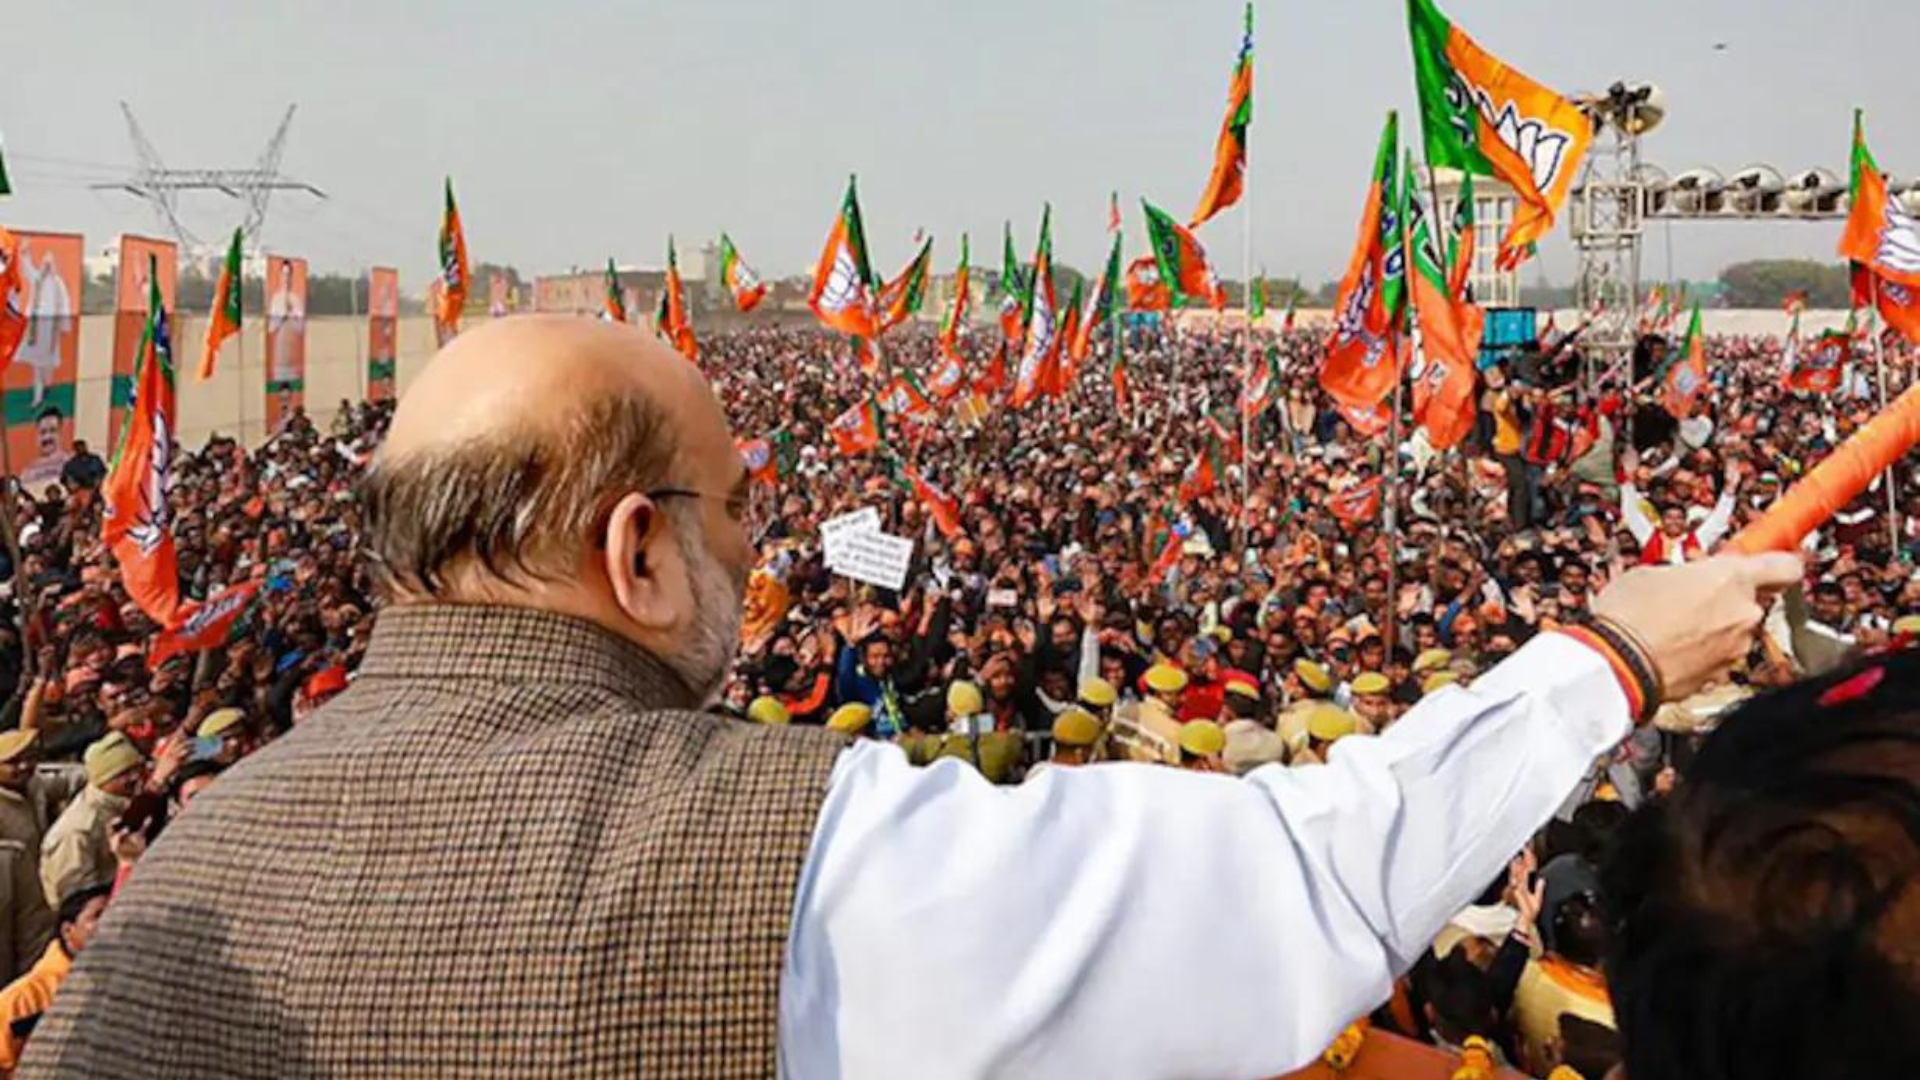 Amit Shah to Address Public Rally Tomorrow in Muzaffarnagar, Uttar Pradesh